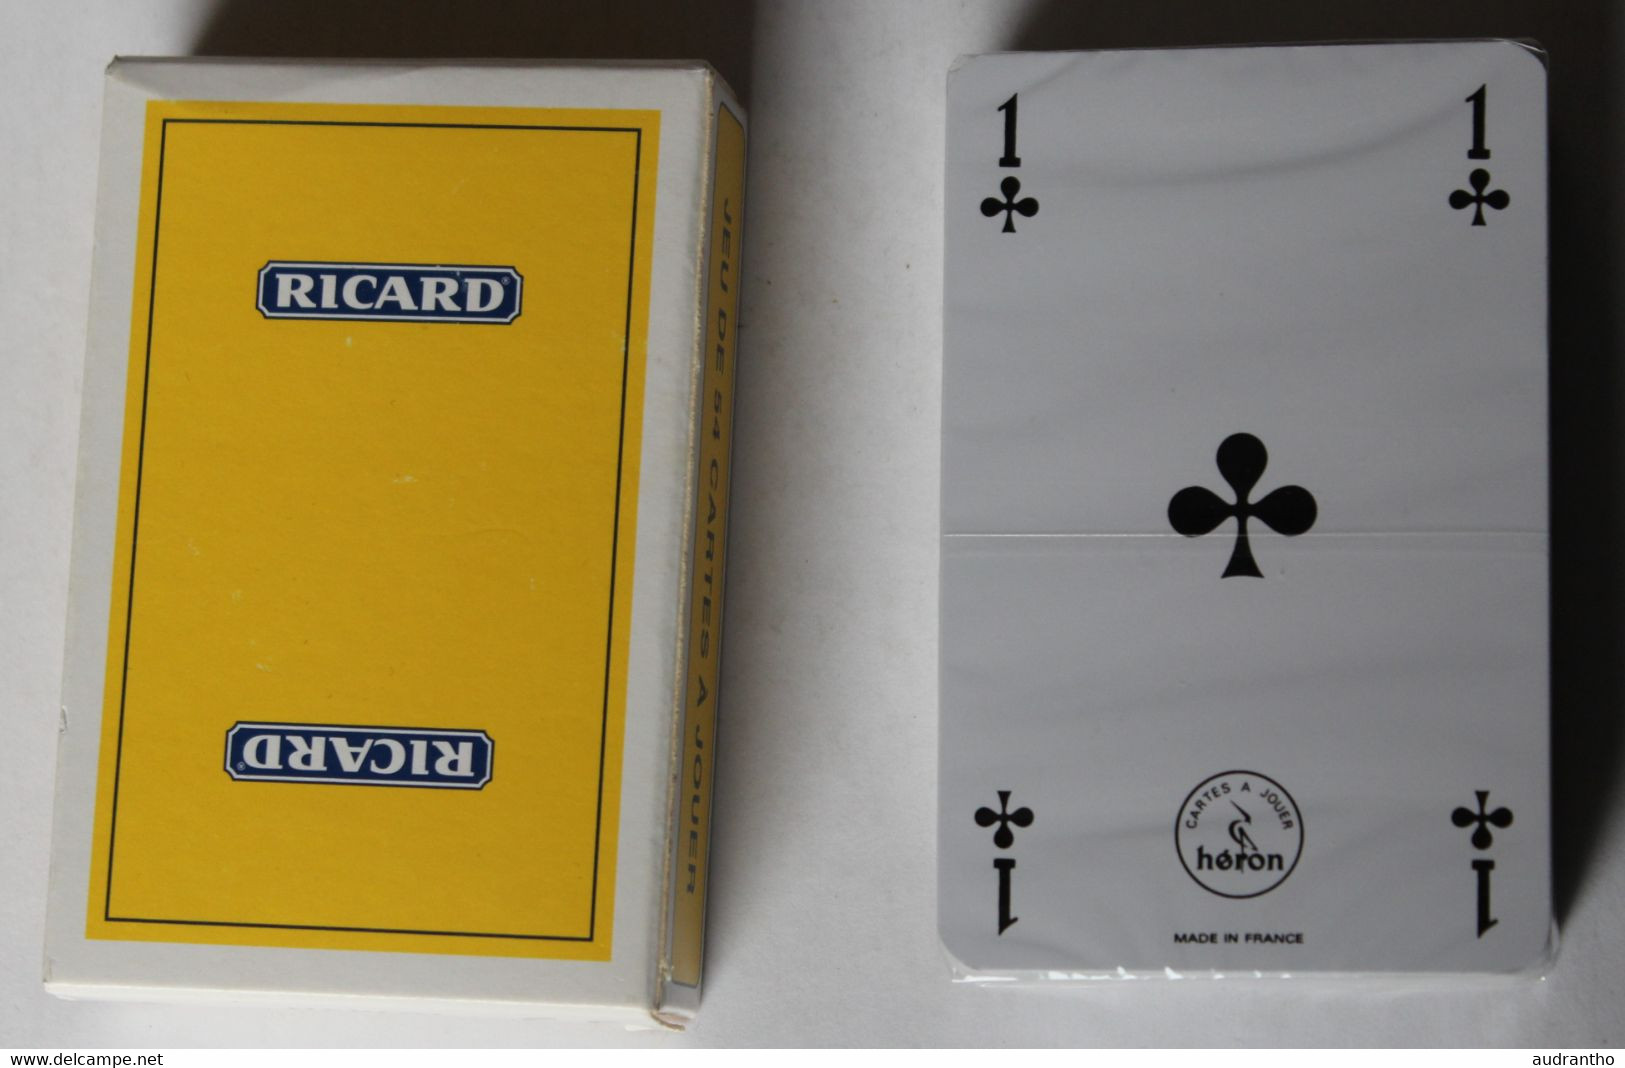 Neuf Jeu De 54 Cartes à Jouer Publicitaire RICARD Héron - 54 Cards